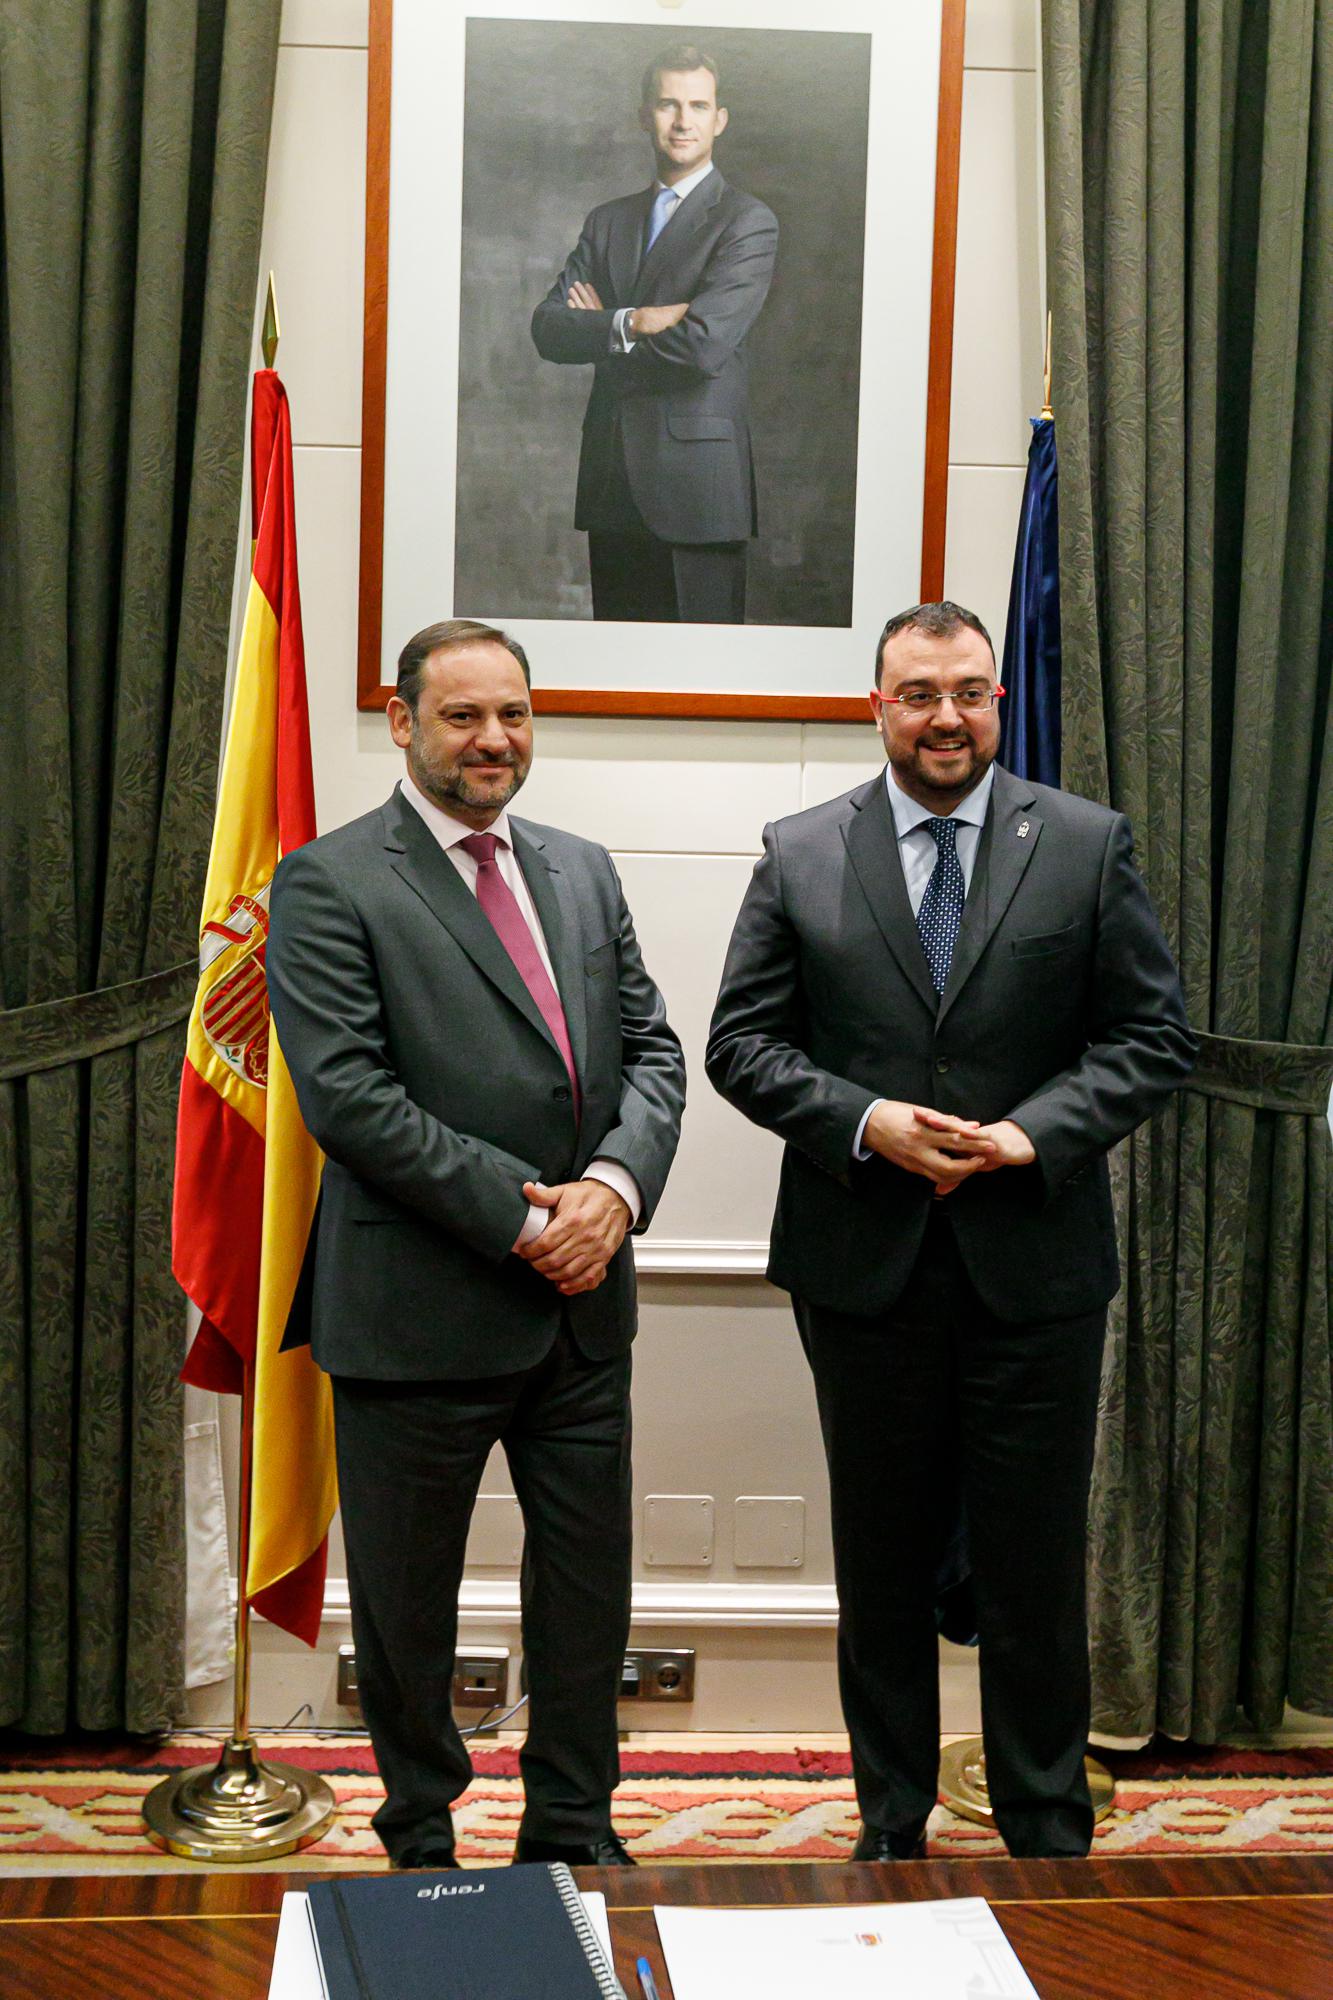 Imagen noticia: El ministro de Fomento con el presidente del Principado de Asturias - Ministerio de Fomento.